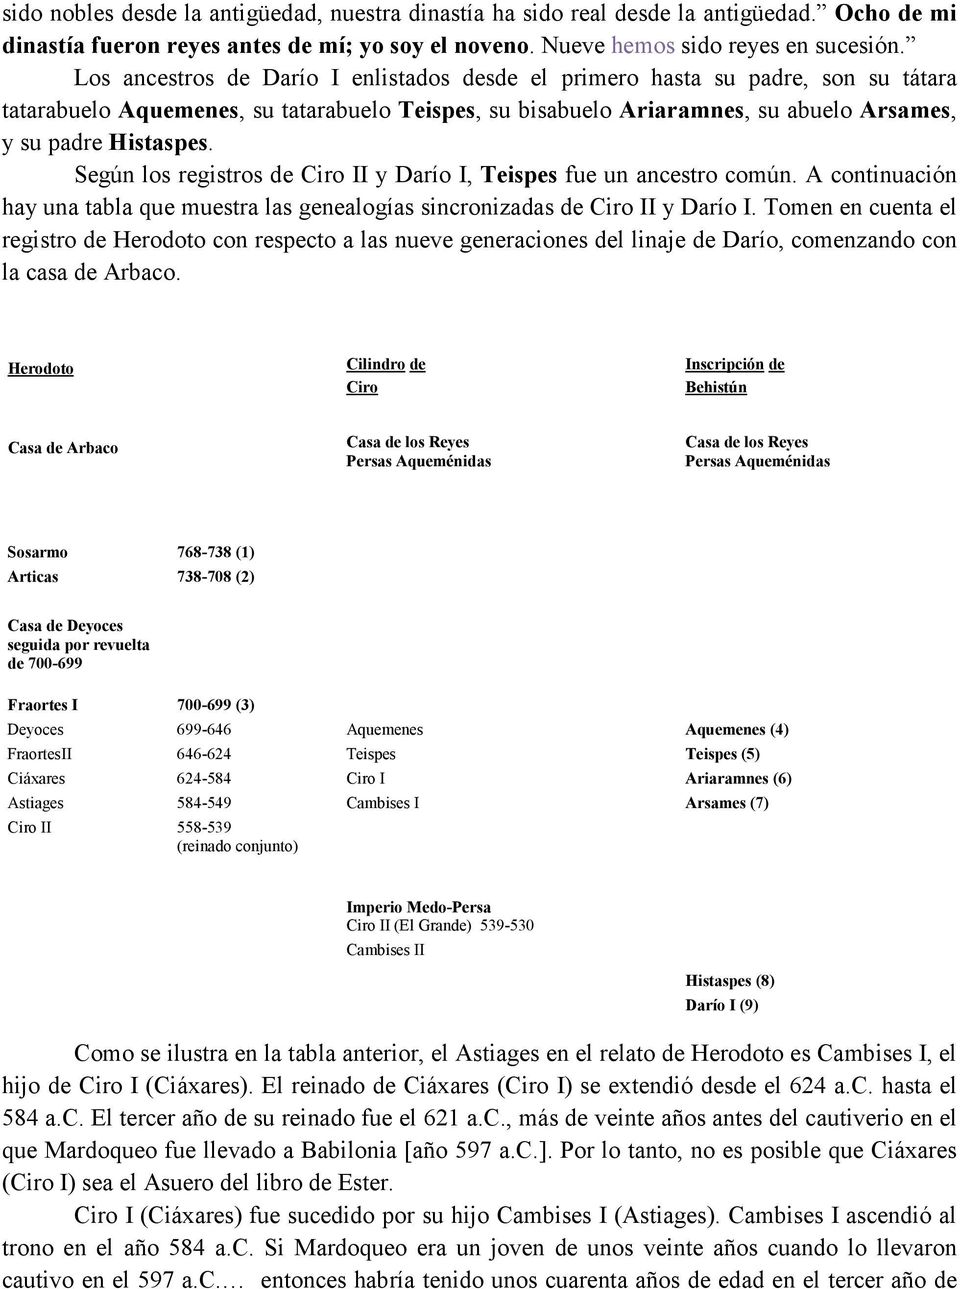 Según los registros de Ciro II y Darío I, Teispes fue un ancestro común. A continuación hay una tabla que muestra las genealogías sincronizadas de Ciro II y Darío I.